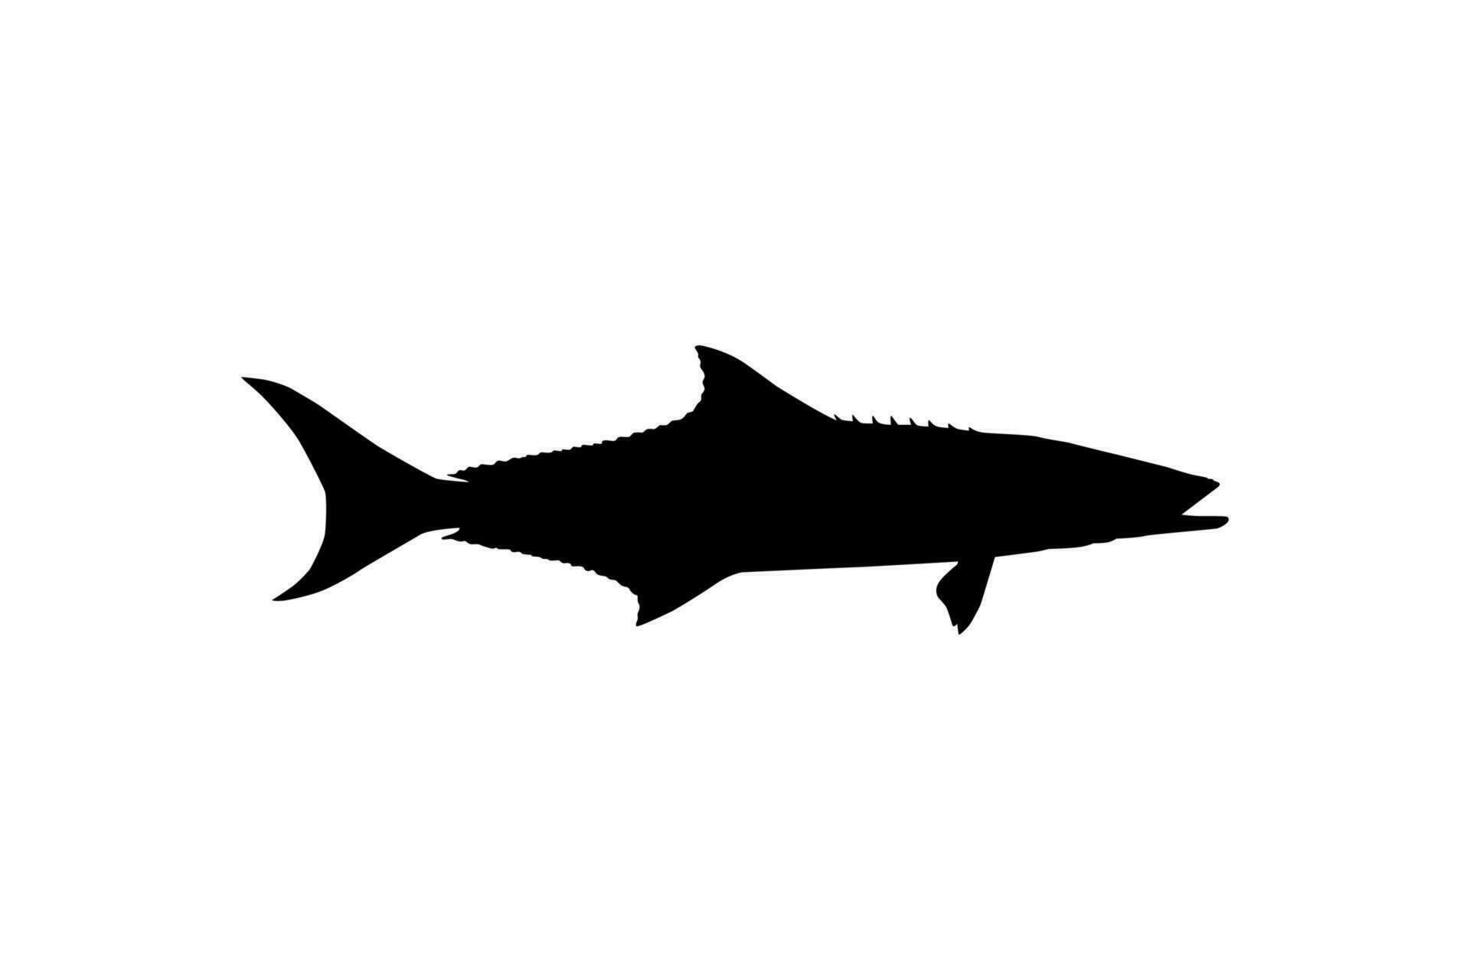 cobia pesce silhouette, anche conosciuto come nero pesce re, nero salmone, ling, pesce limone, mangiatore di granchi, prodigo figlio, baccalà, e nero bonito. vettore illustrazione